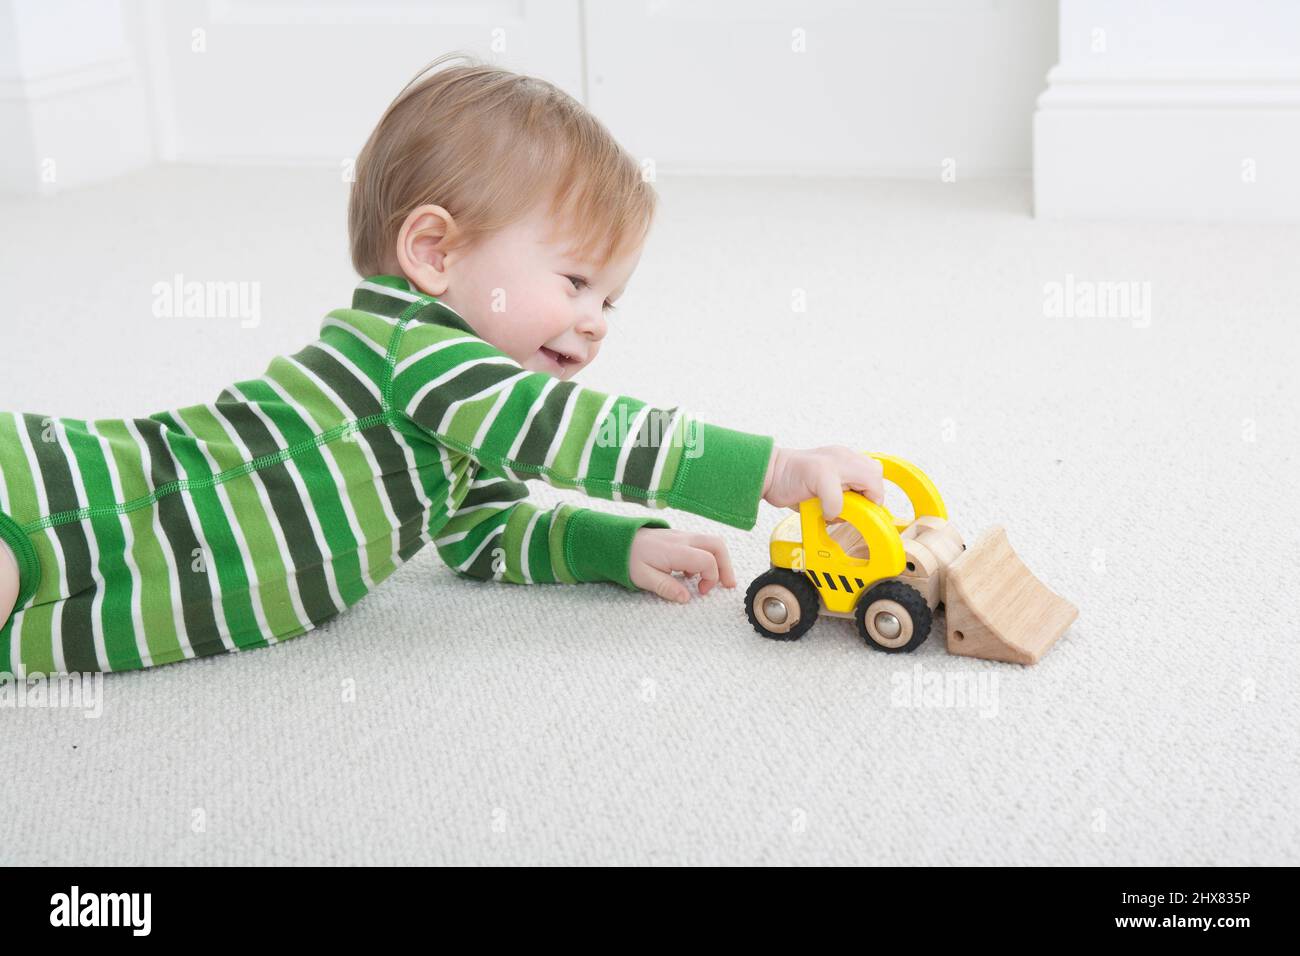 Kleiner Junge, der vorne auf dem Teppichboden liegt und mit einem gelben LKW-Spielzeug spielt Stockfoto